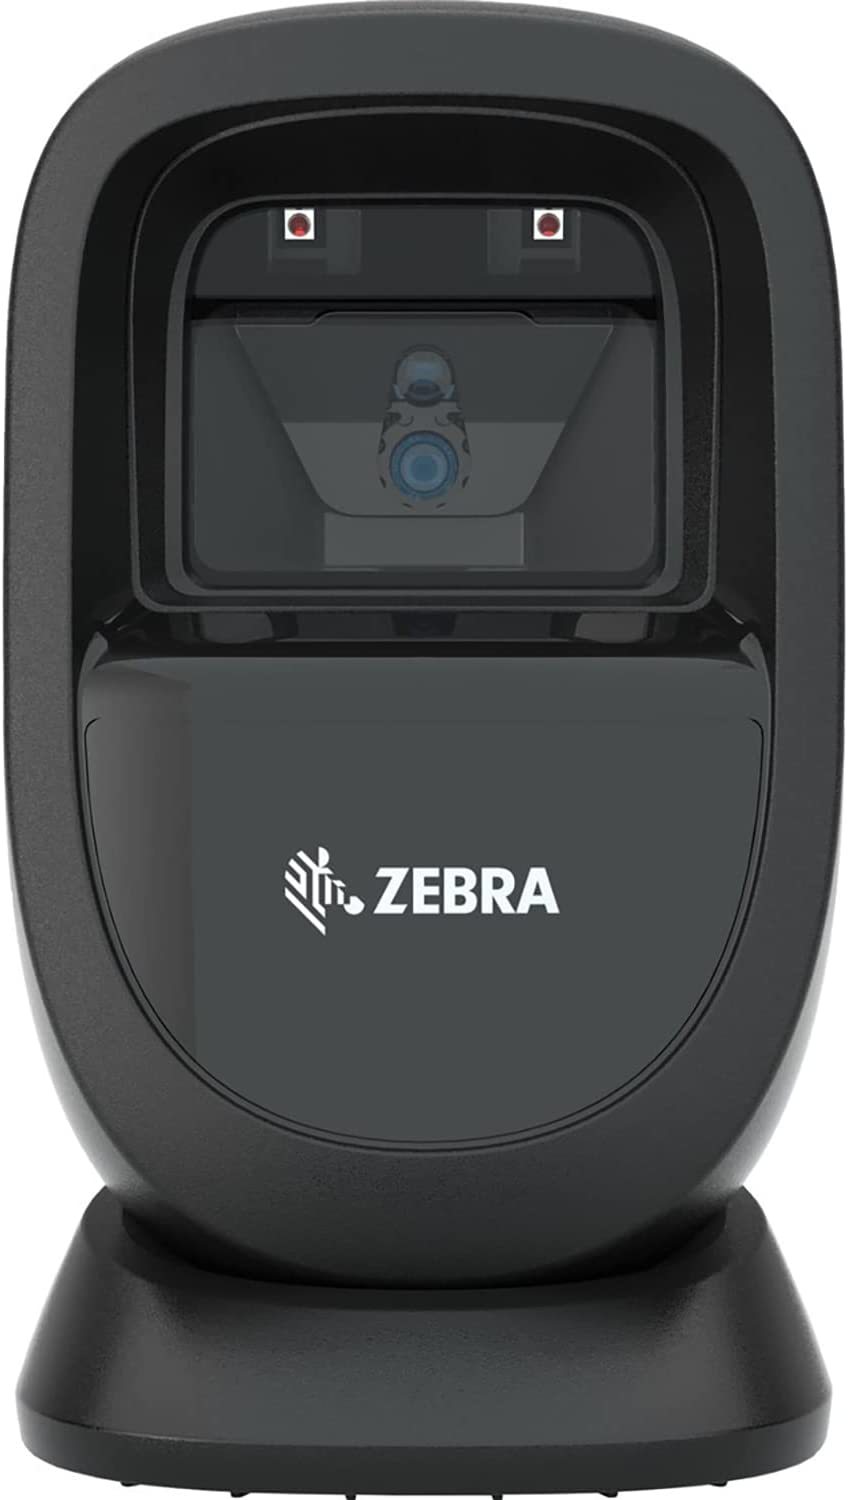 Primary image for Zebra Ds9308 1D/2D Presentation Scanner: Midnight Black Jttands, Serial, Usb,